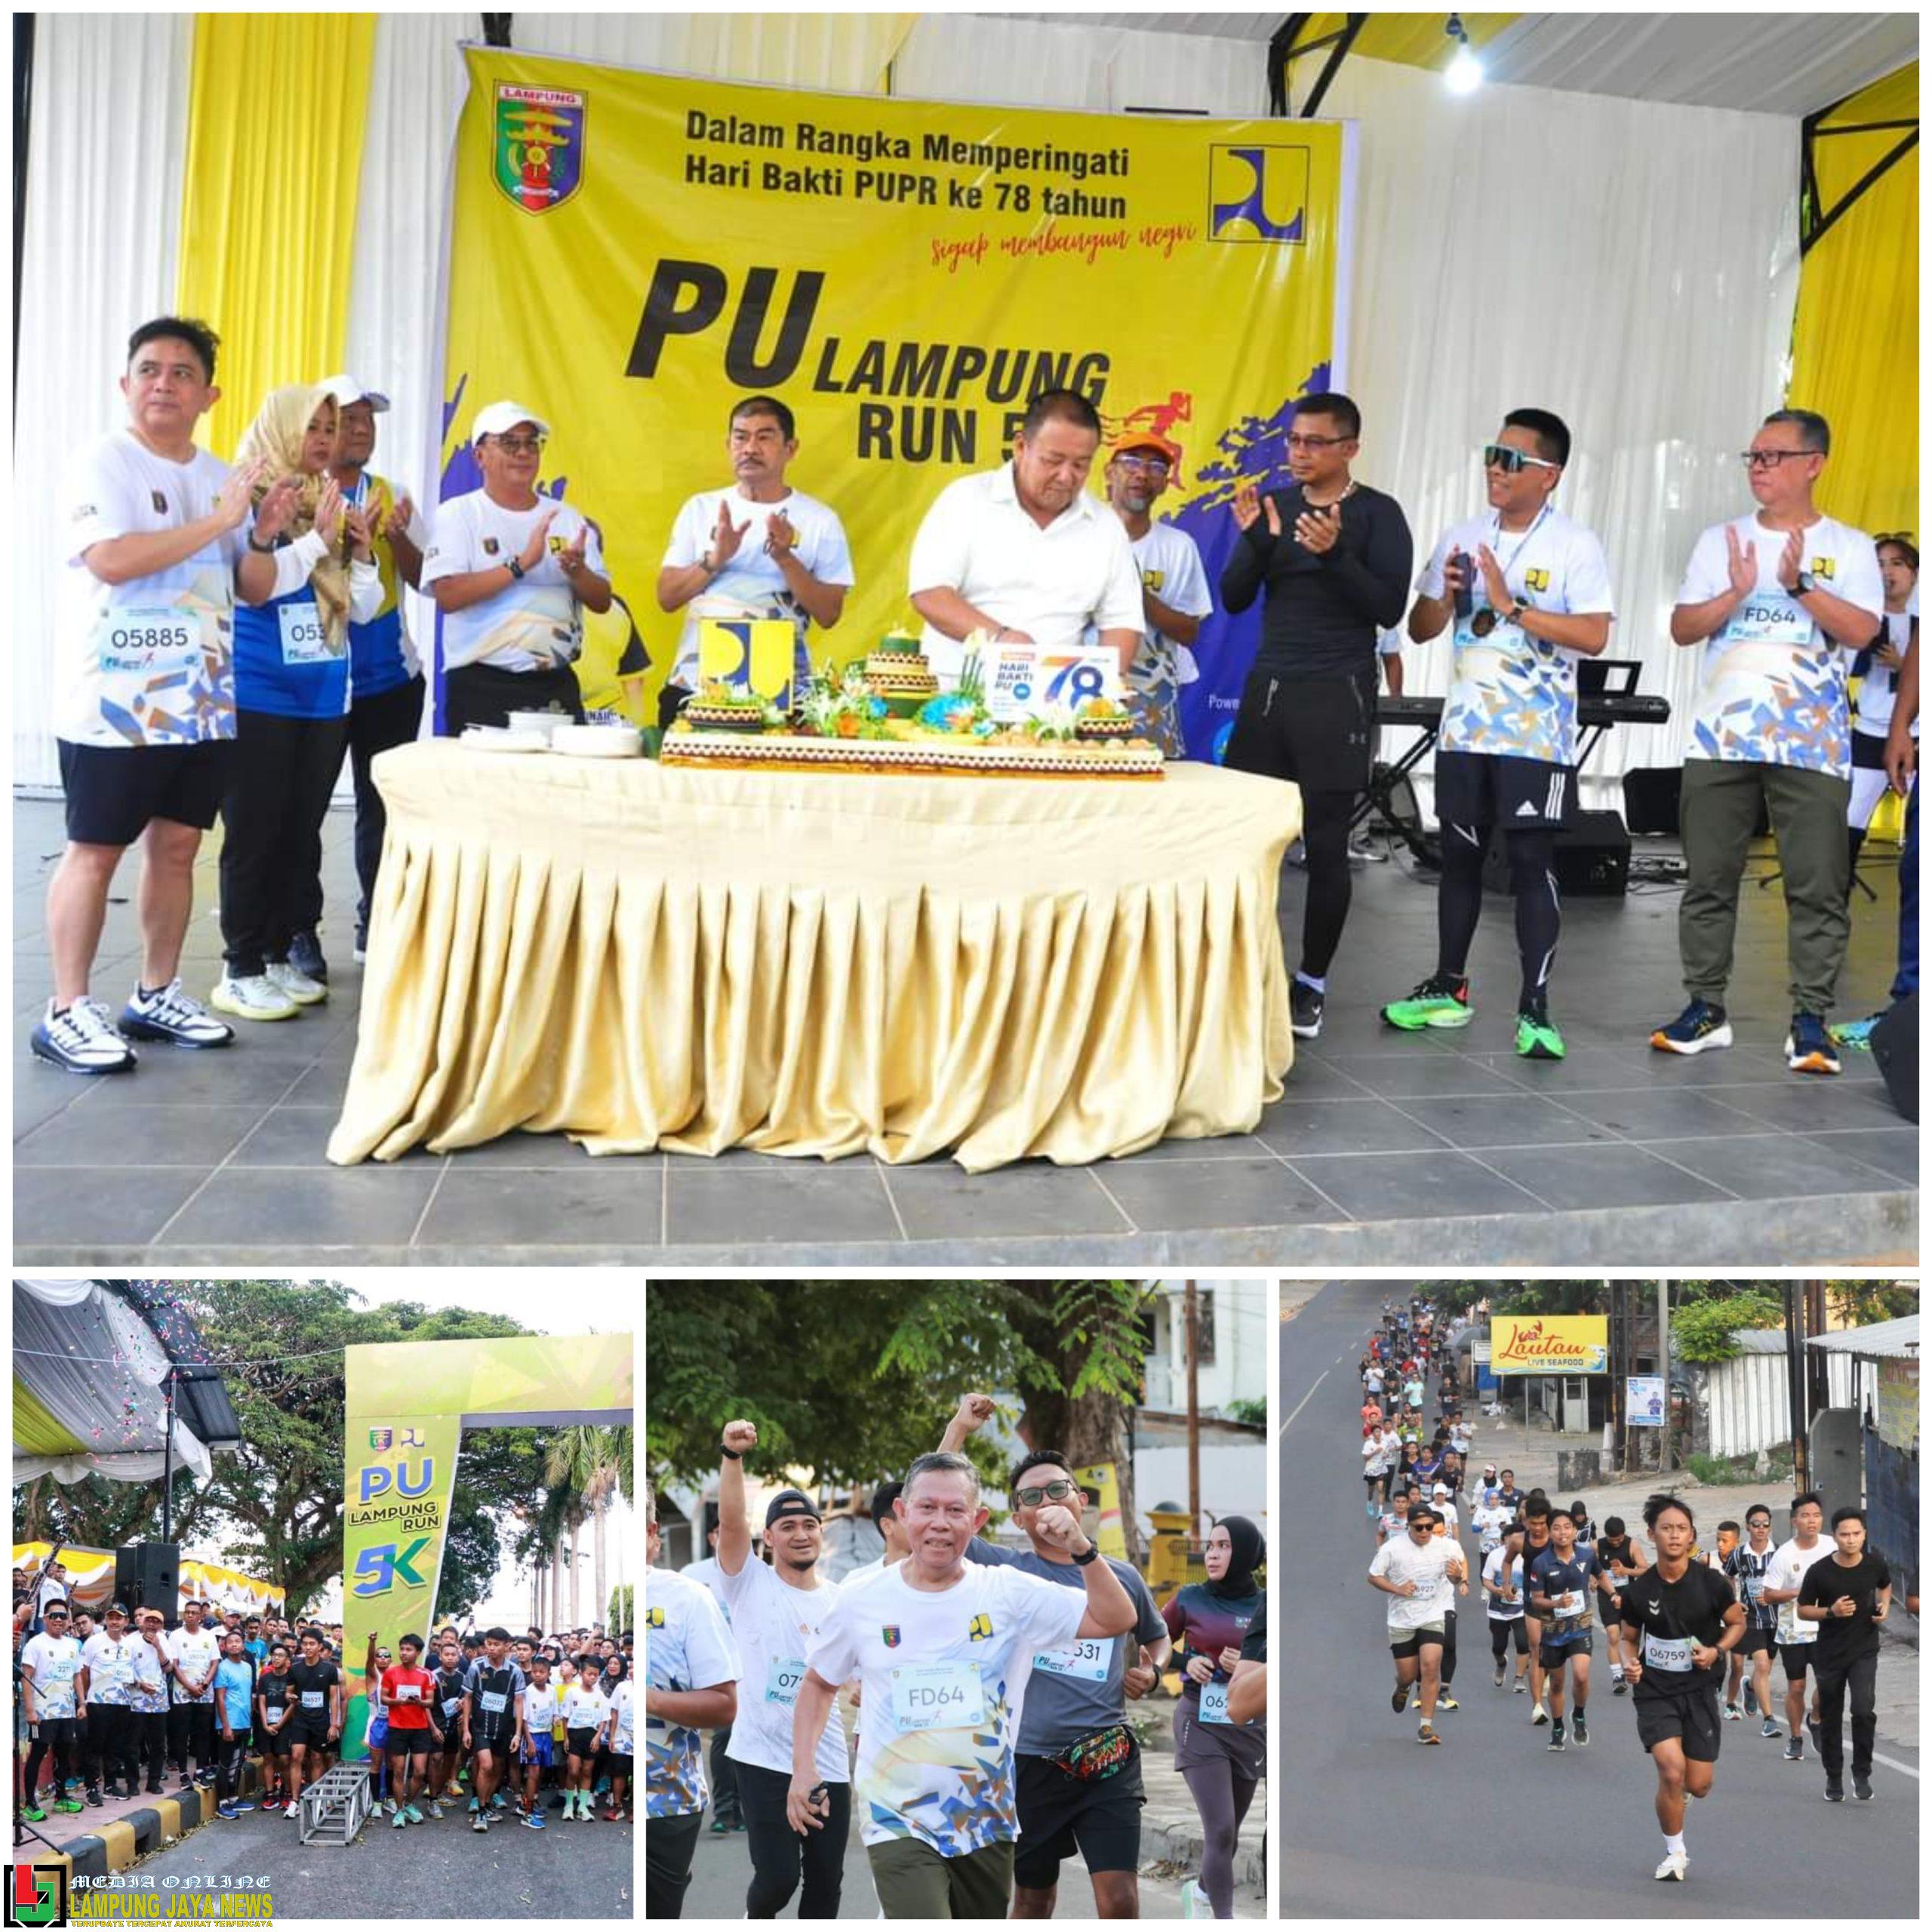 Peringati Hari Bakti Pekerjaan Umum ke-78 Provinsi Lampung, Gubernur Arinal Djunaidi Lepas PU Run 5 K